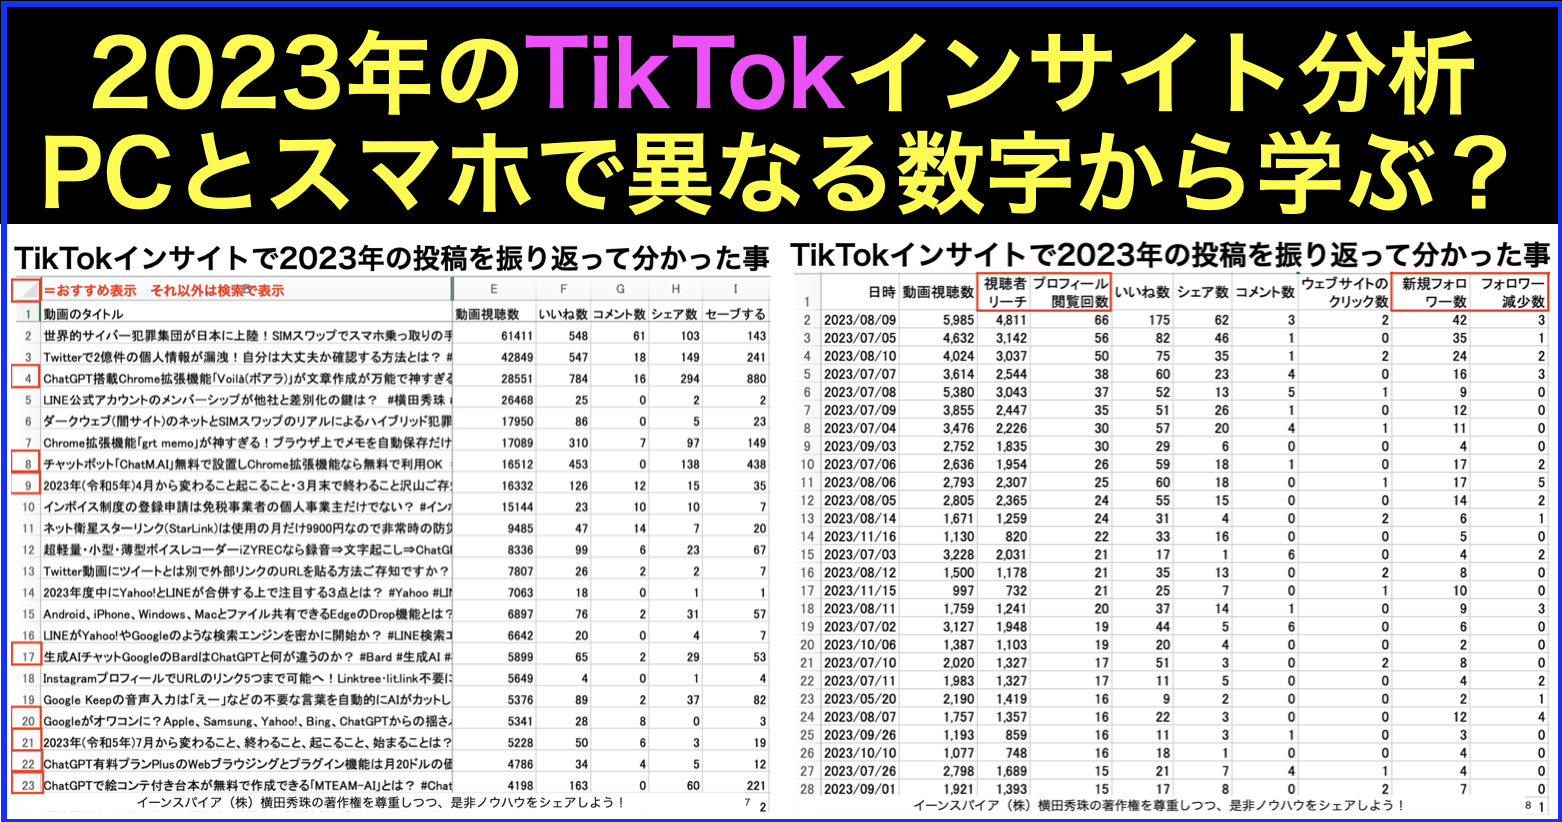 2023年TikTokの再生回数･フル視聴率･トラフィックソースを分析